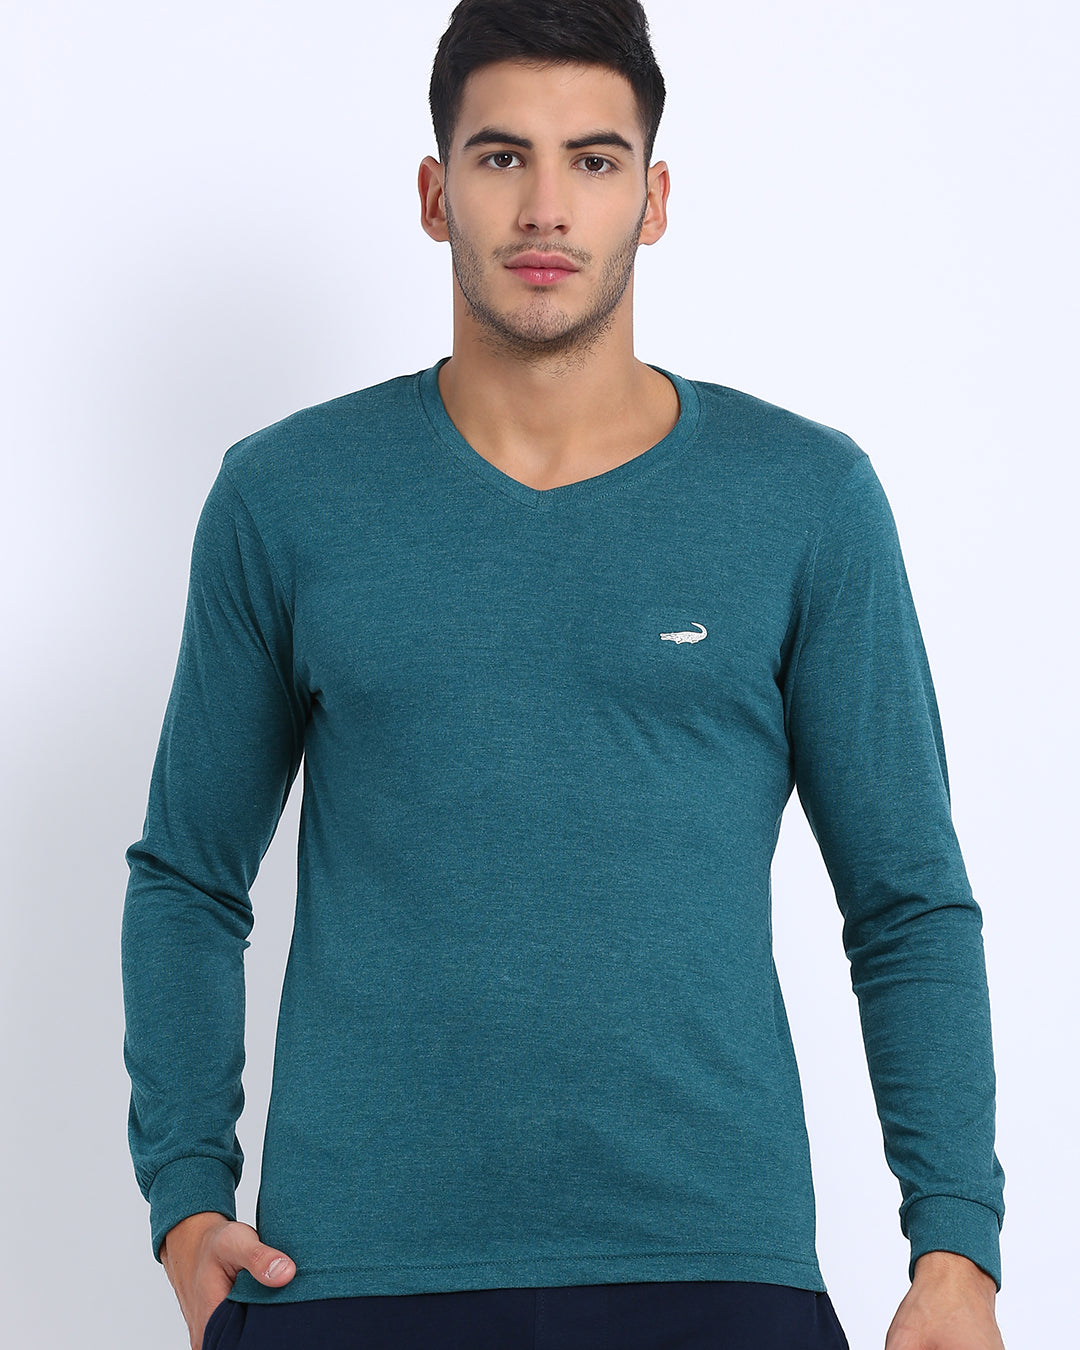 Men's Solid V Neck Full Sleeve Cotton T-Shirt - GREEN MELANGE